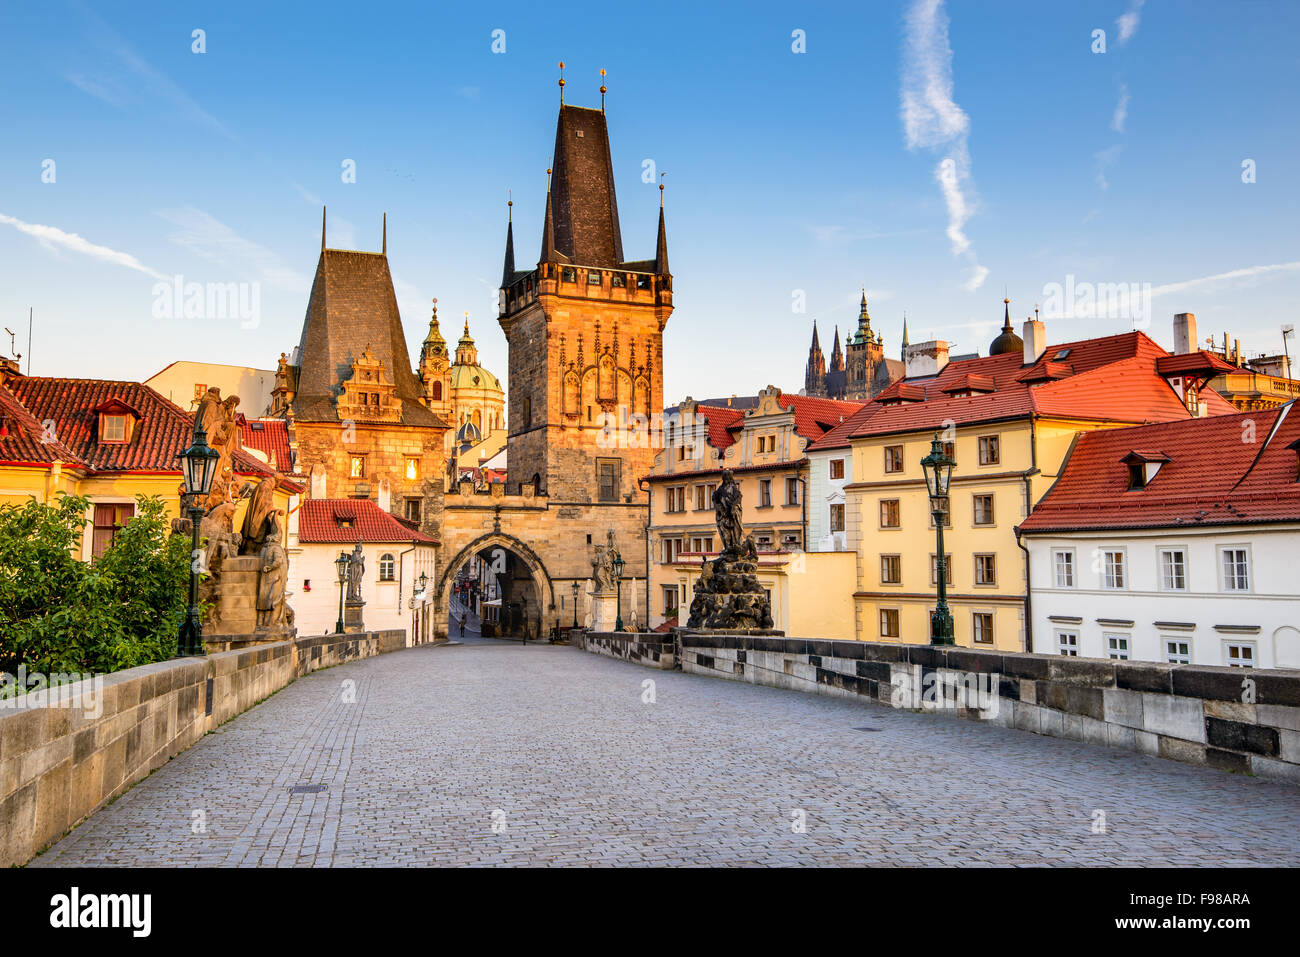 Prague, République tchèque. Le Pont Charles avec sa statuette, Tour du pont de la vieille ville et la tour du pont Judith. Banque D'Images